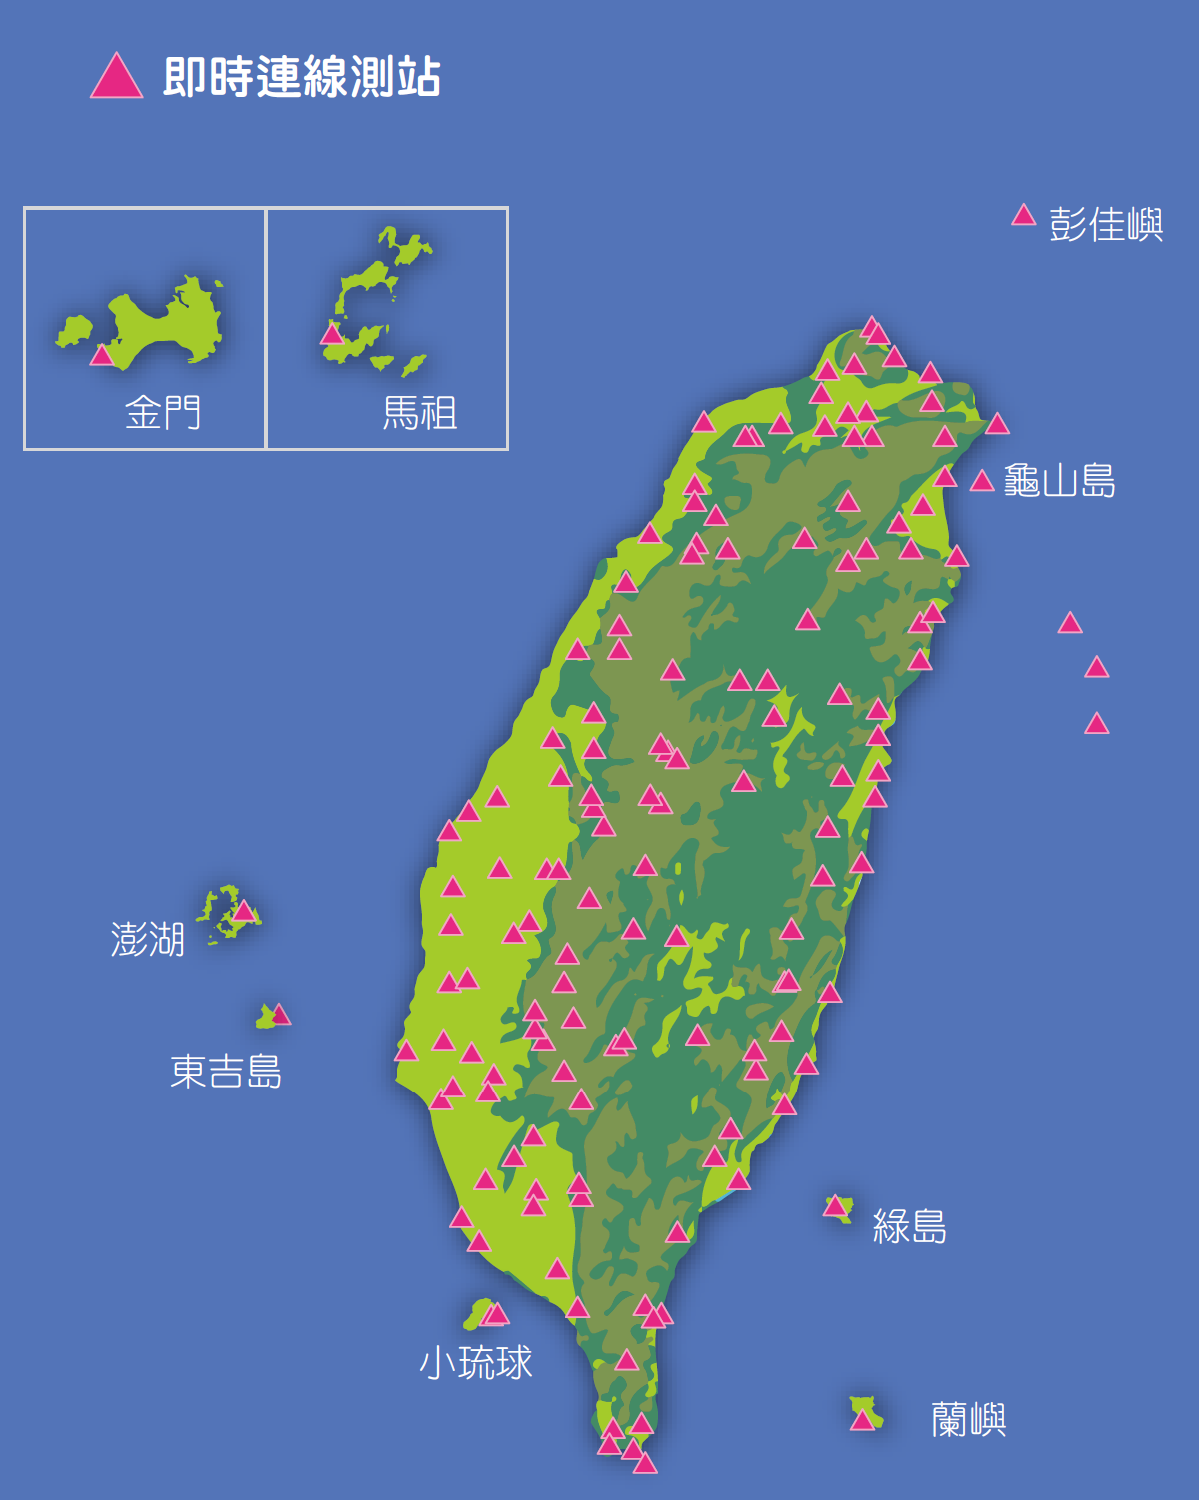 臺灣地震觀測站分布現況。